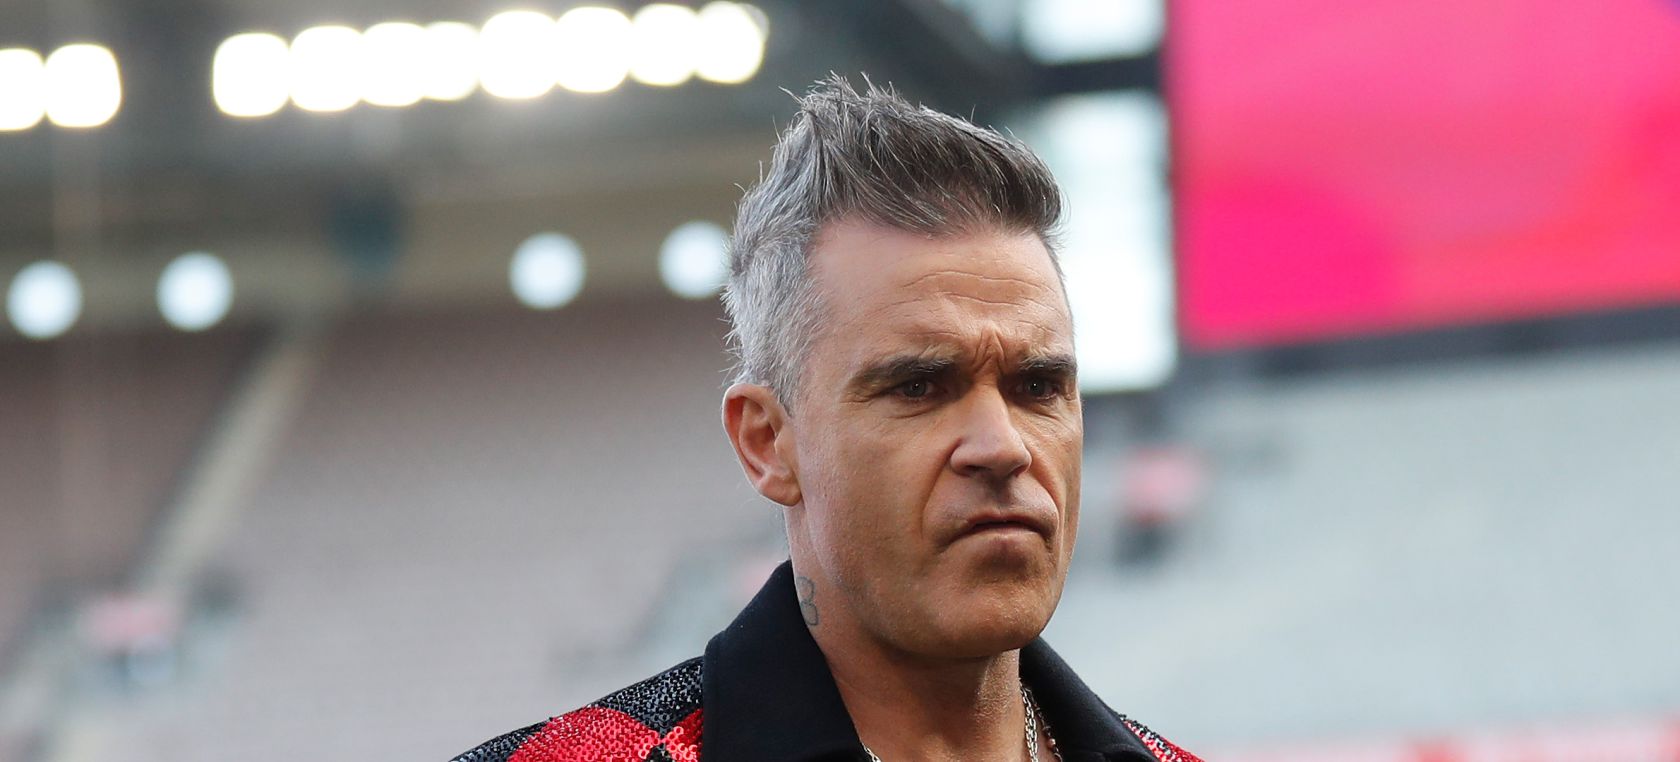 El plagio de Robbie Williams: “Esta canción me costó 2.5 millones de libras. ¡Disfrutadla!”